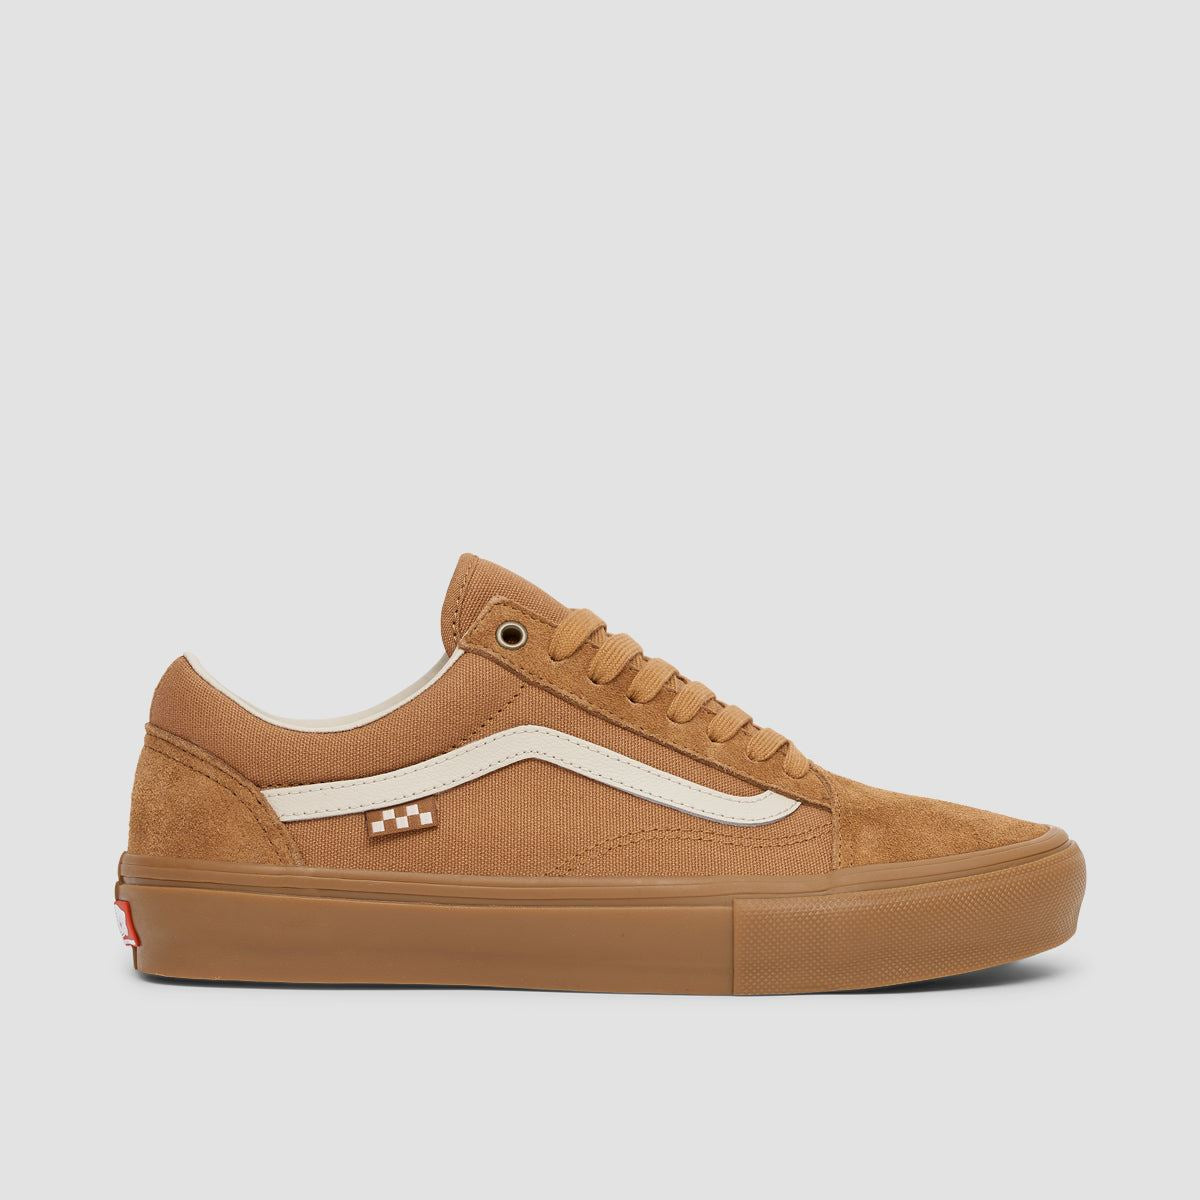 Vans Skate Old Skool Shoes - Light Brown/Gum